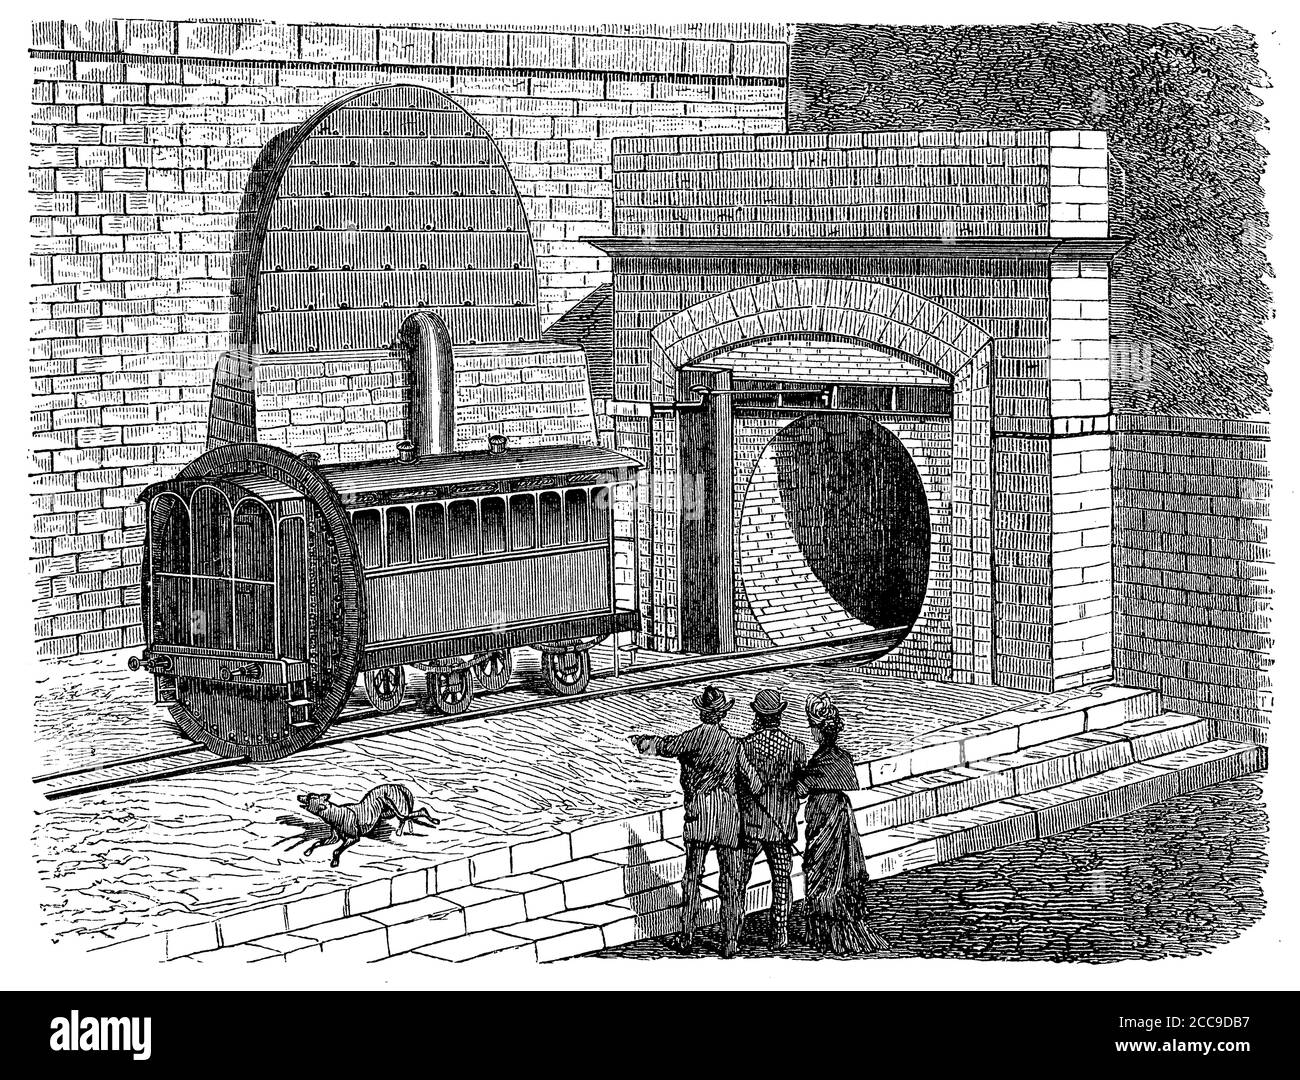 Train pneumatique Londres - Sydenham sur le terrain du Crystal Palace, le chariot entre dans un tunnel en brique d'un seul rail avec ouverture et fermeture des vannes aux extrémités pour les trains de voyageurs propulsant l'air, 19e siècle Banque D'Images